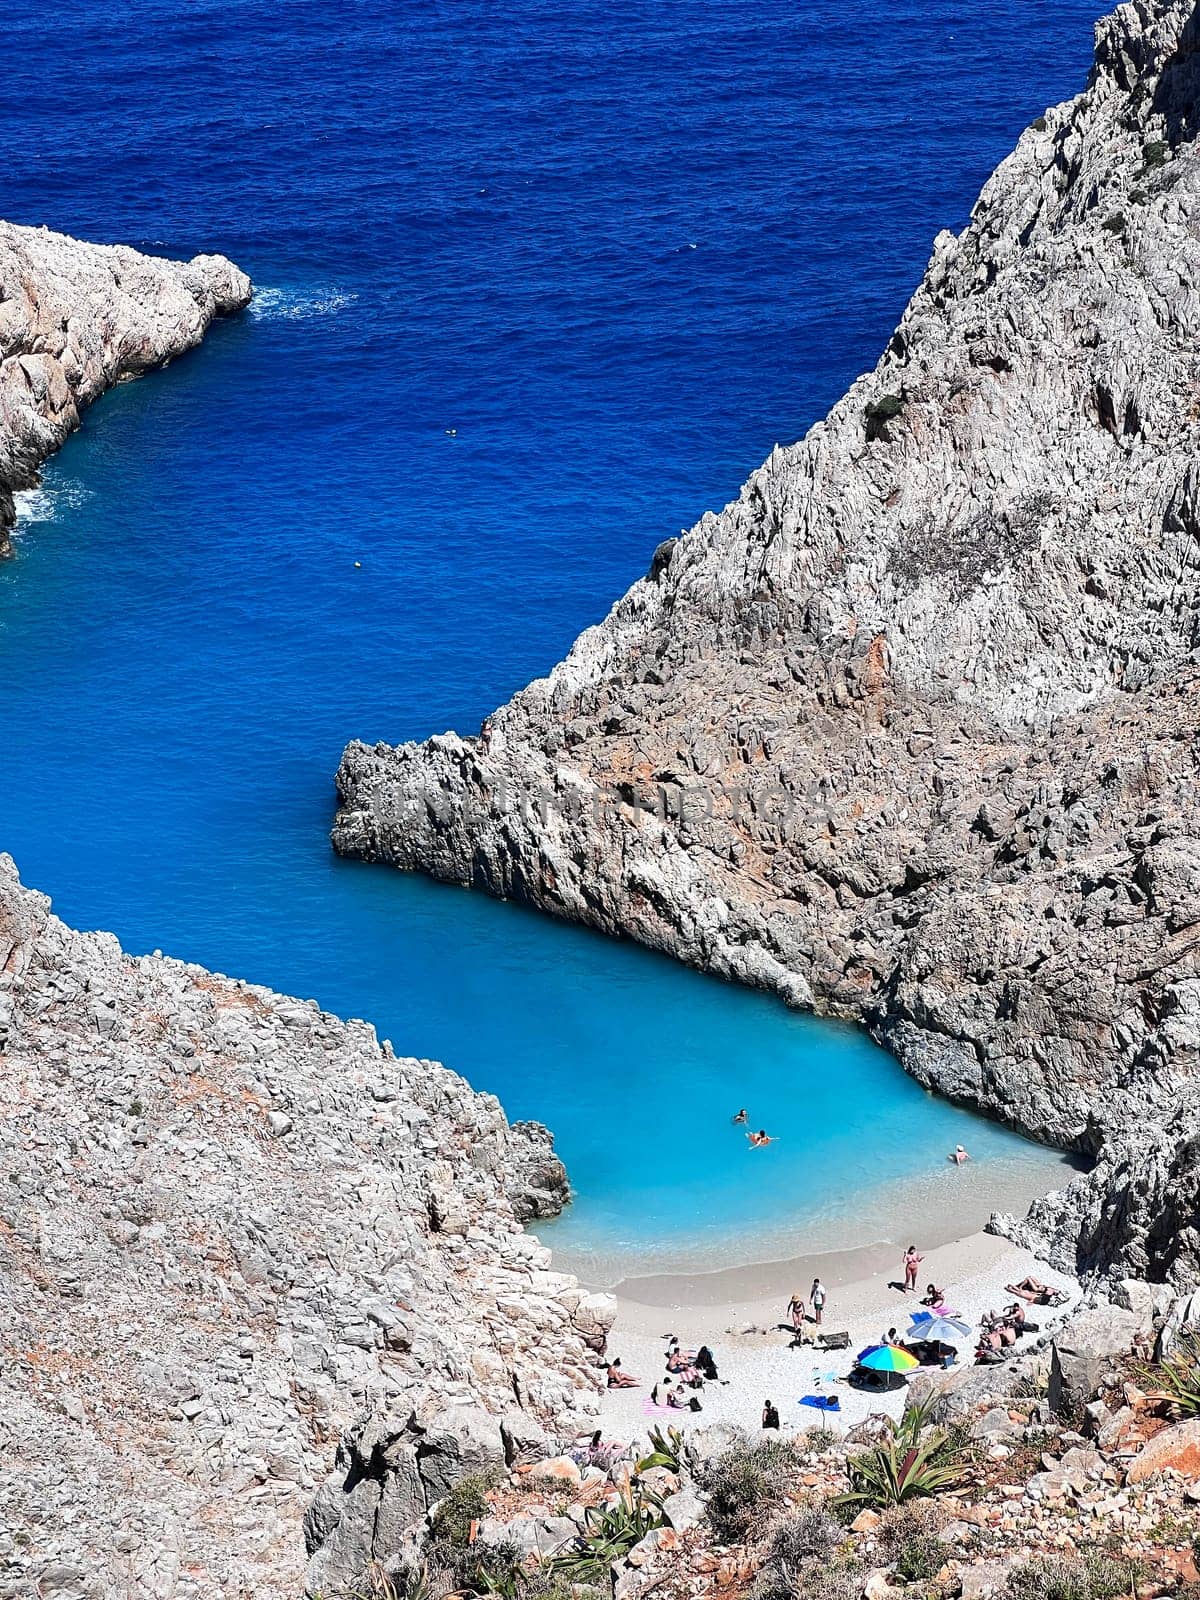 Seitan Liman beach view in Greek island of Crete by padgurskas